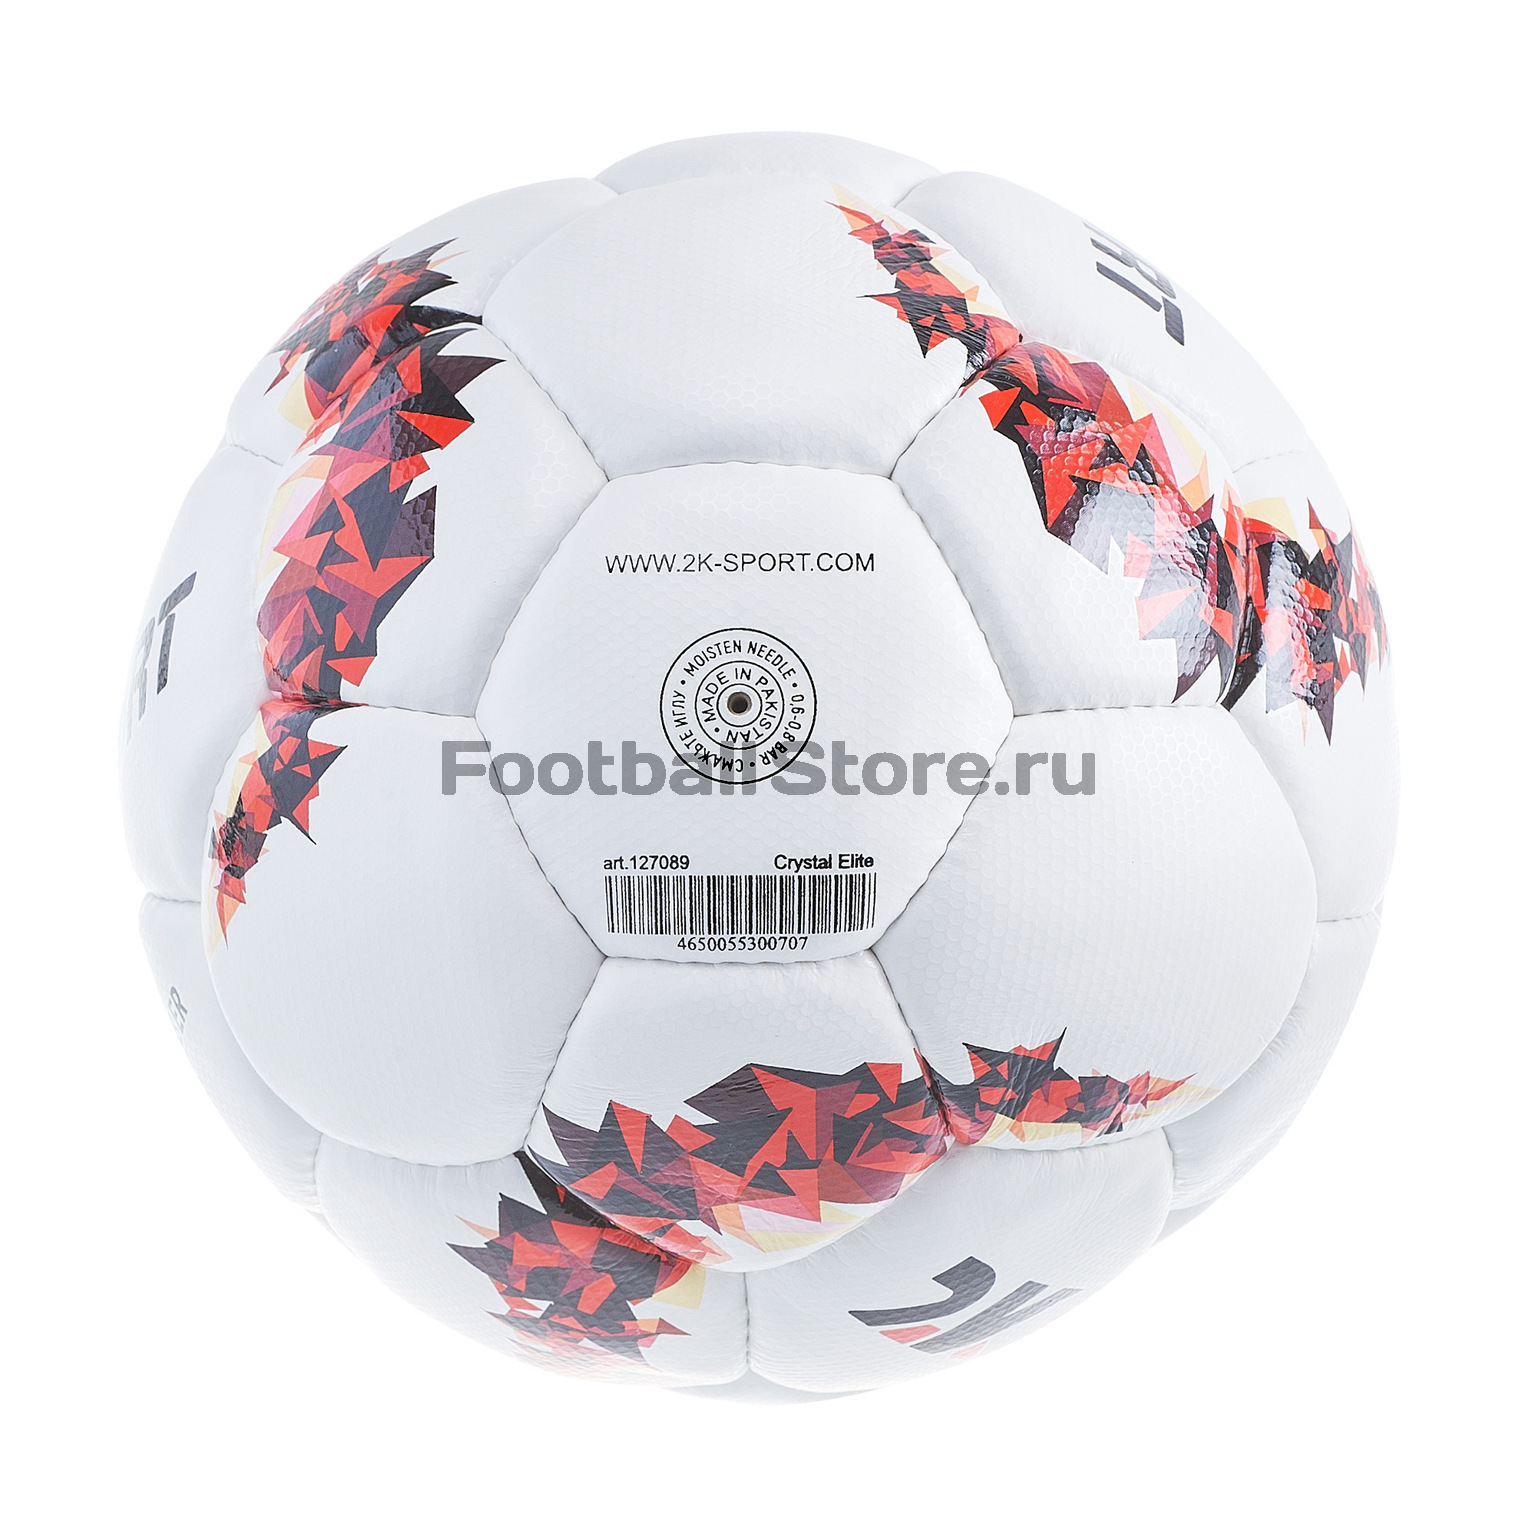 Футбольный мяч 2К Sport Crystal Elite Microfiber 127089